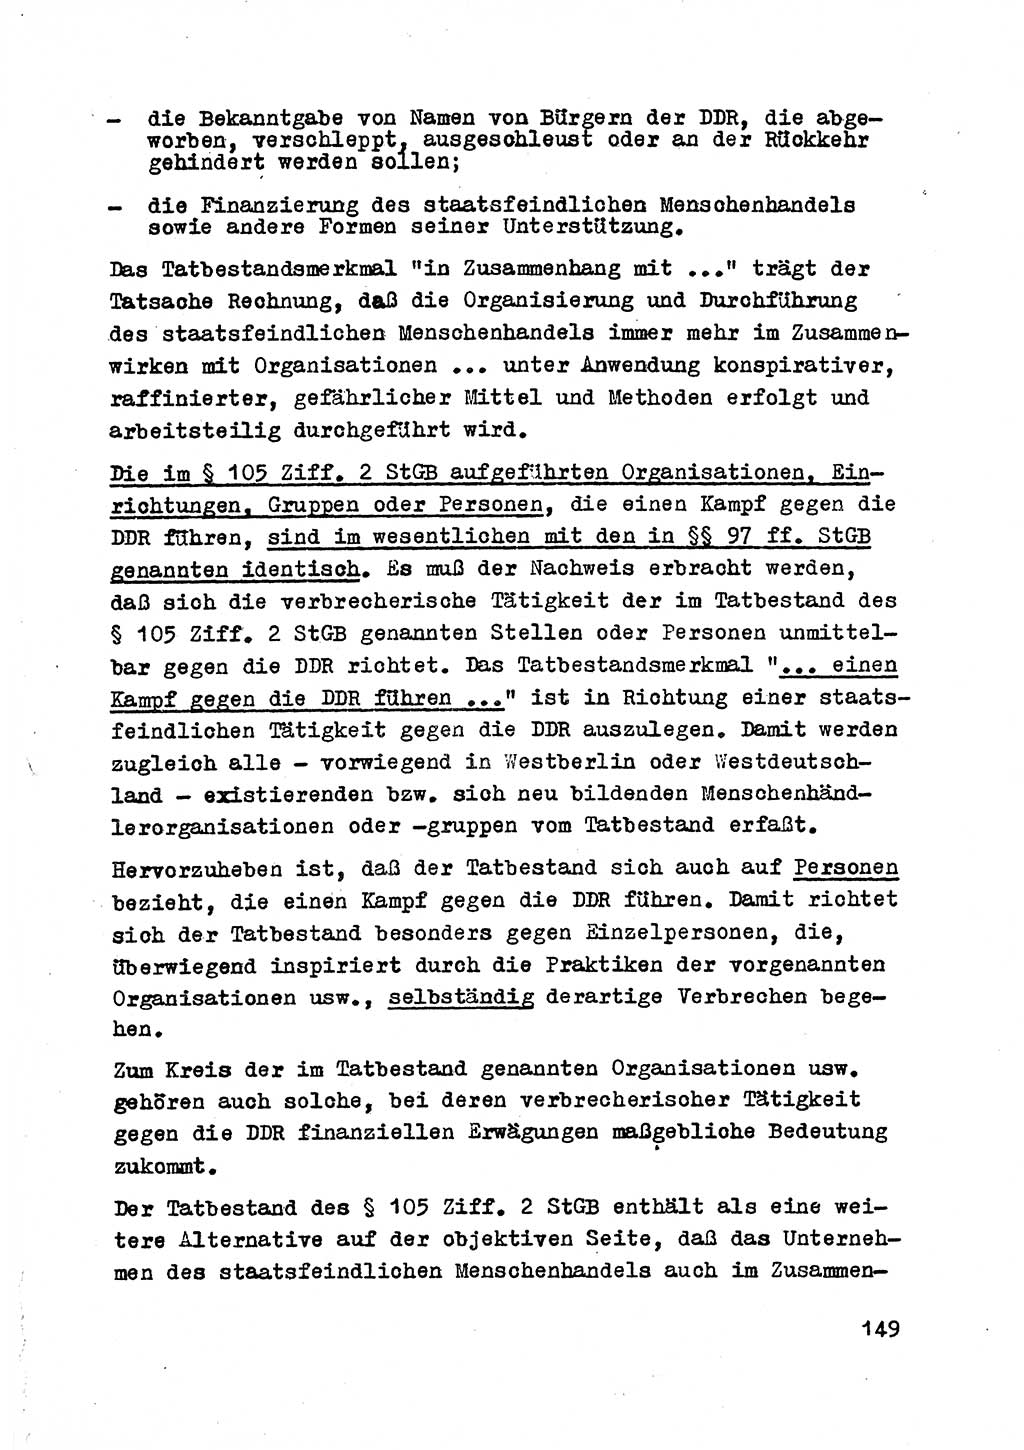 Strafrecht der DDR (Deutsche Demokratische Republik), Besonderer Teil, Lehrmaterial, Heft 2 1969, Seite 149 (Strafr. DDR BT Lehrmat. H. 2 1969, S. 149)